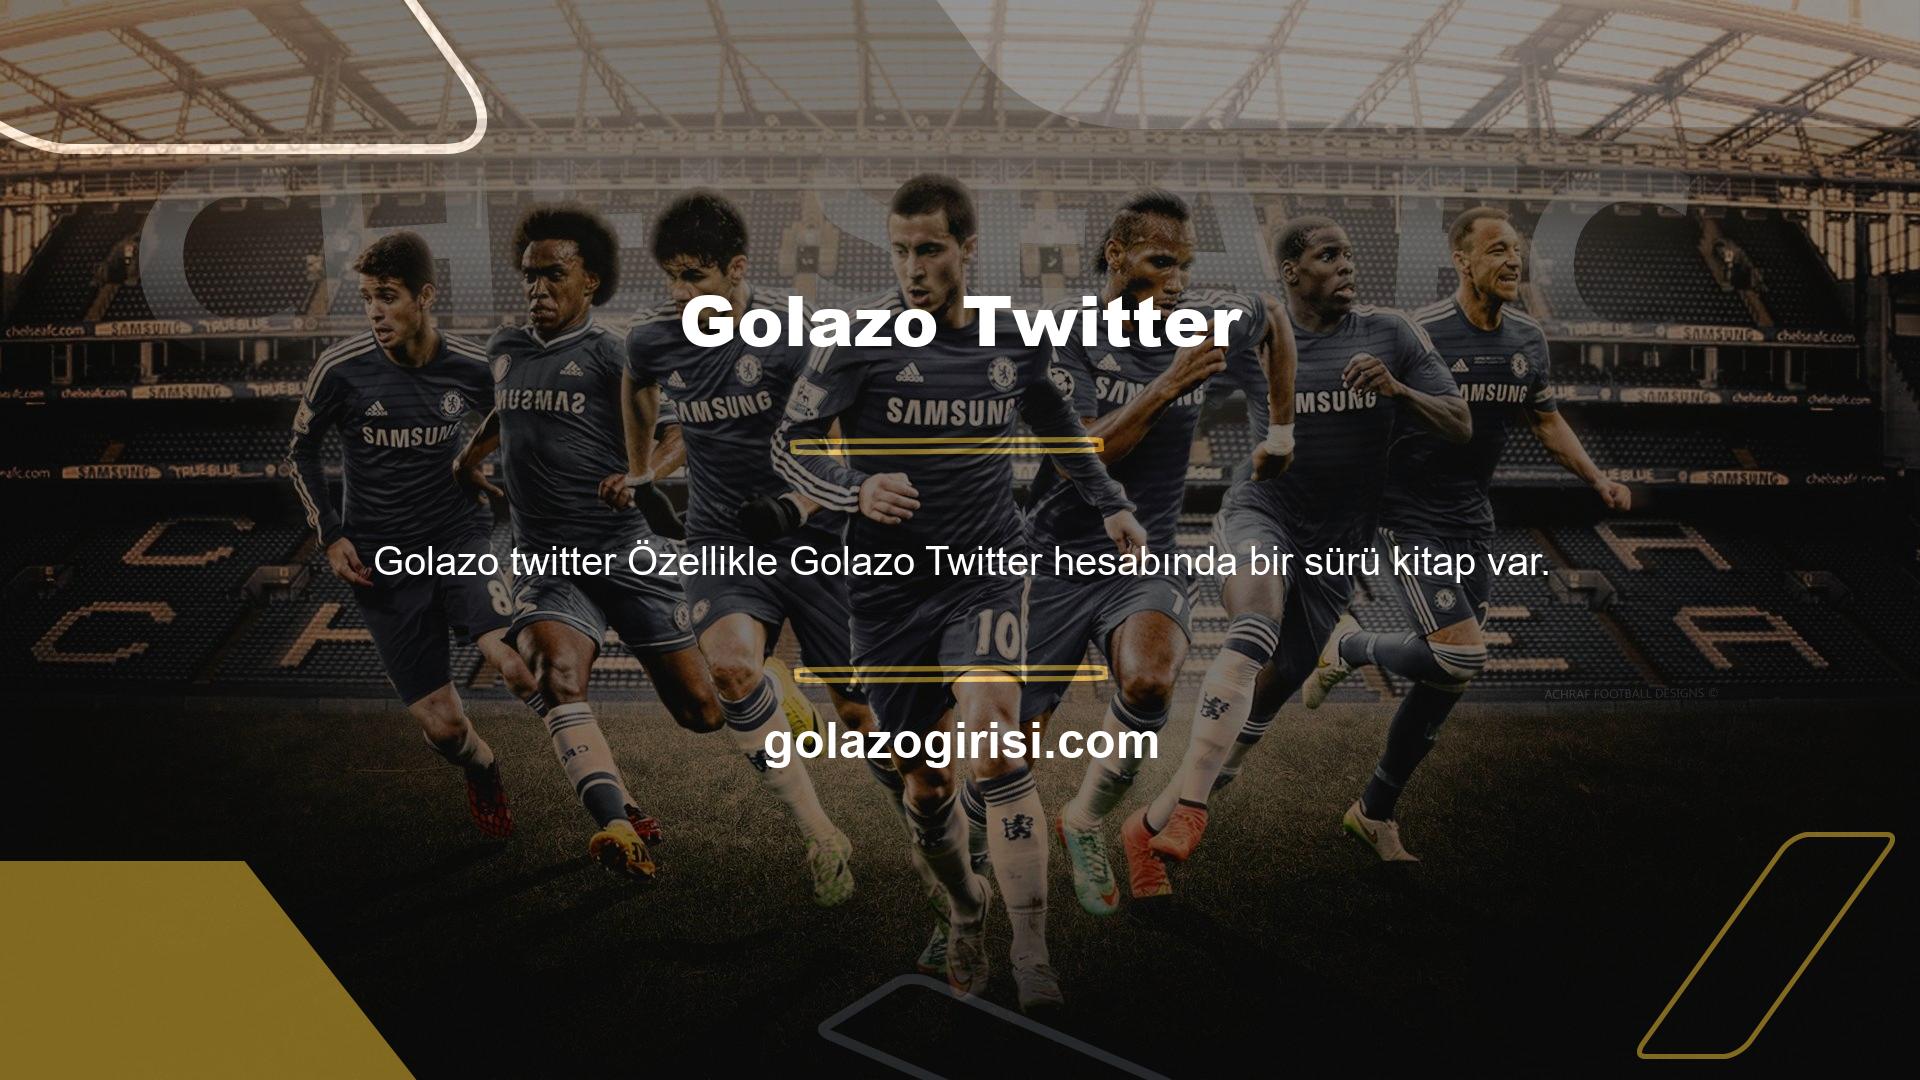 Golazo, kullanıcı sayılarındaki önemli artış nedeniyle bahis platformunun kullanıcı sayısını da artırdı